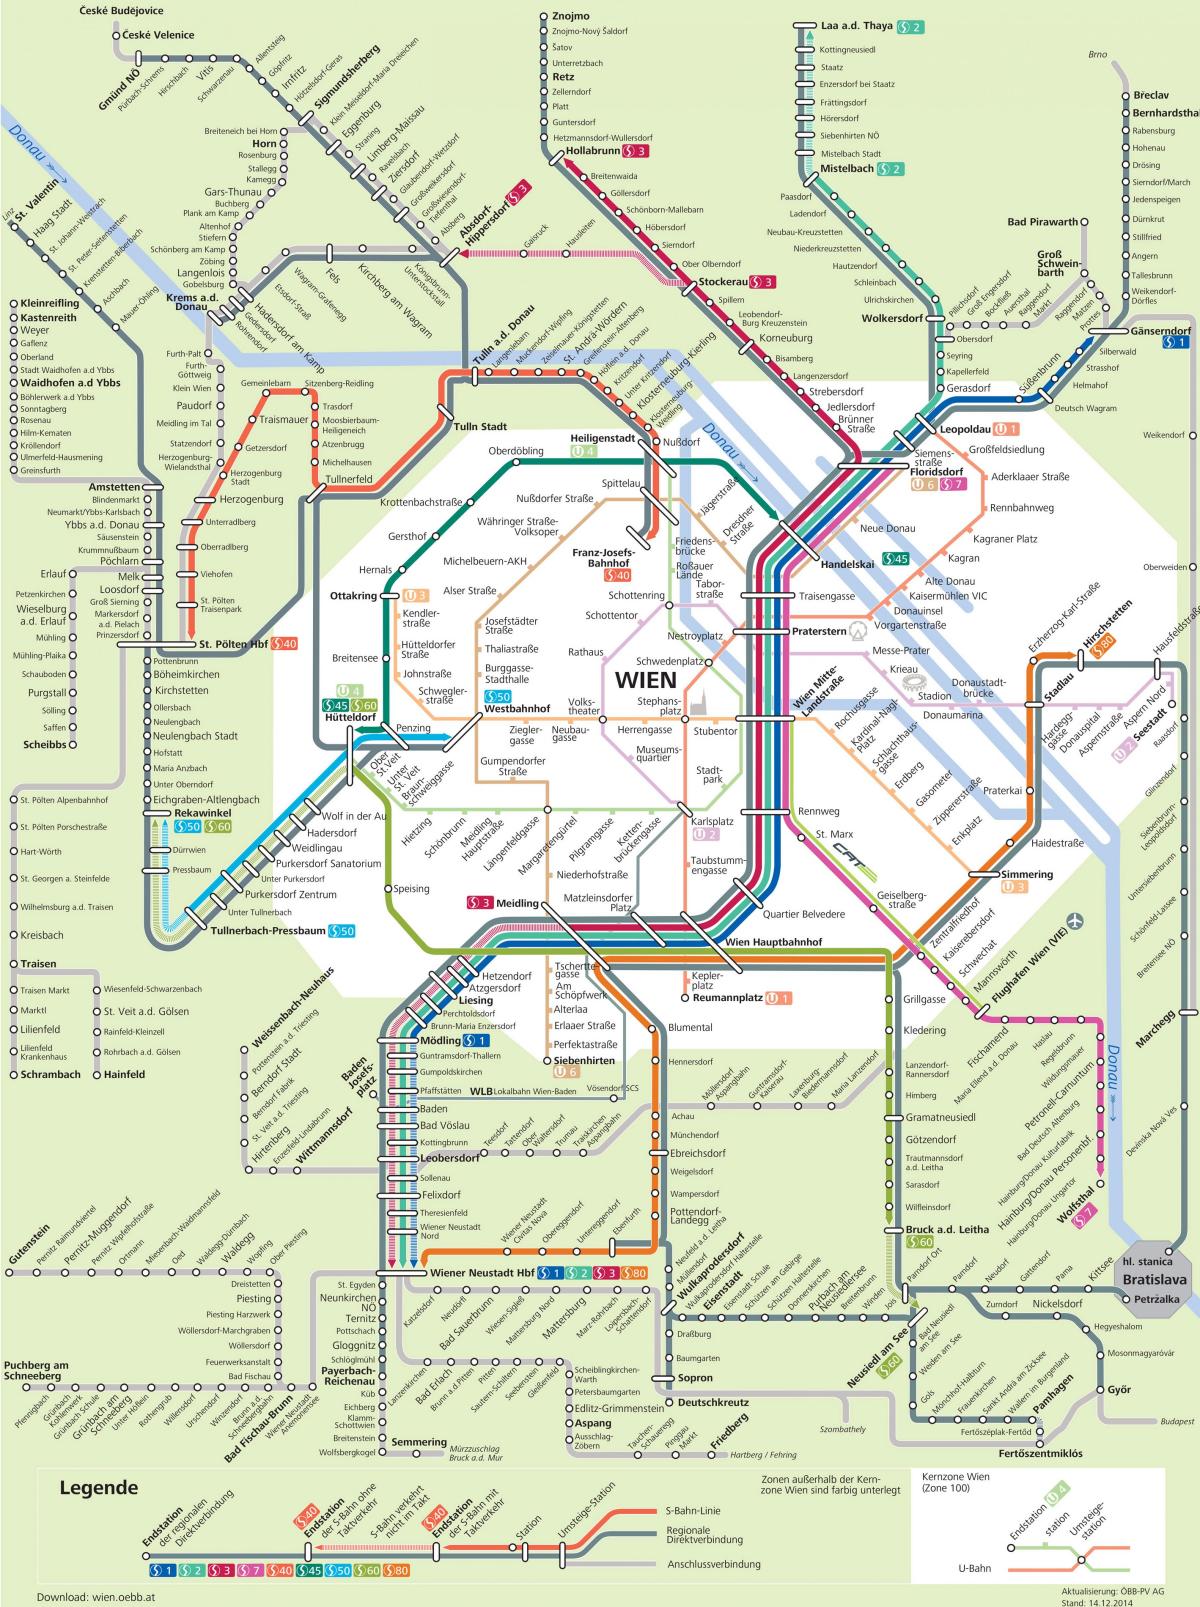 Vienna city transport karta